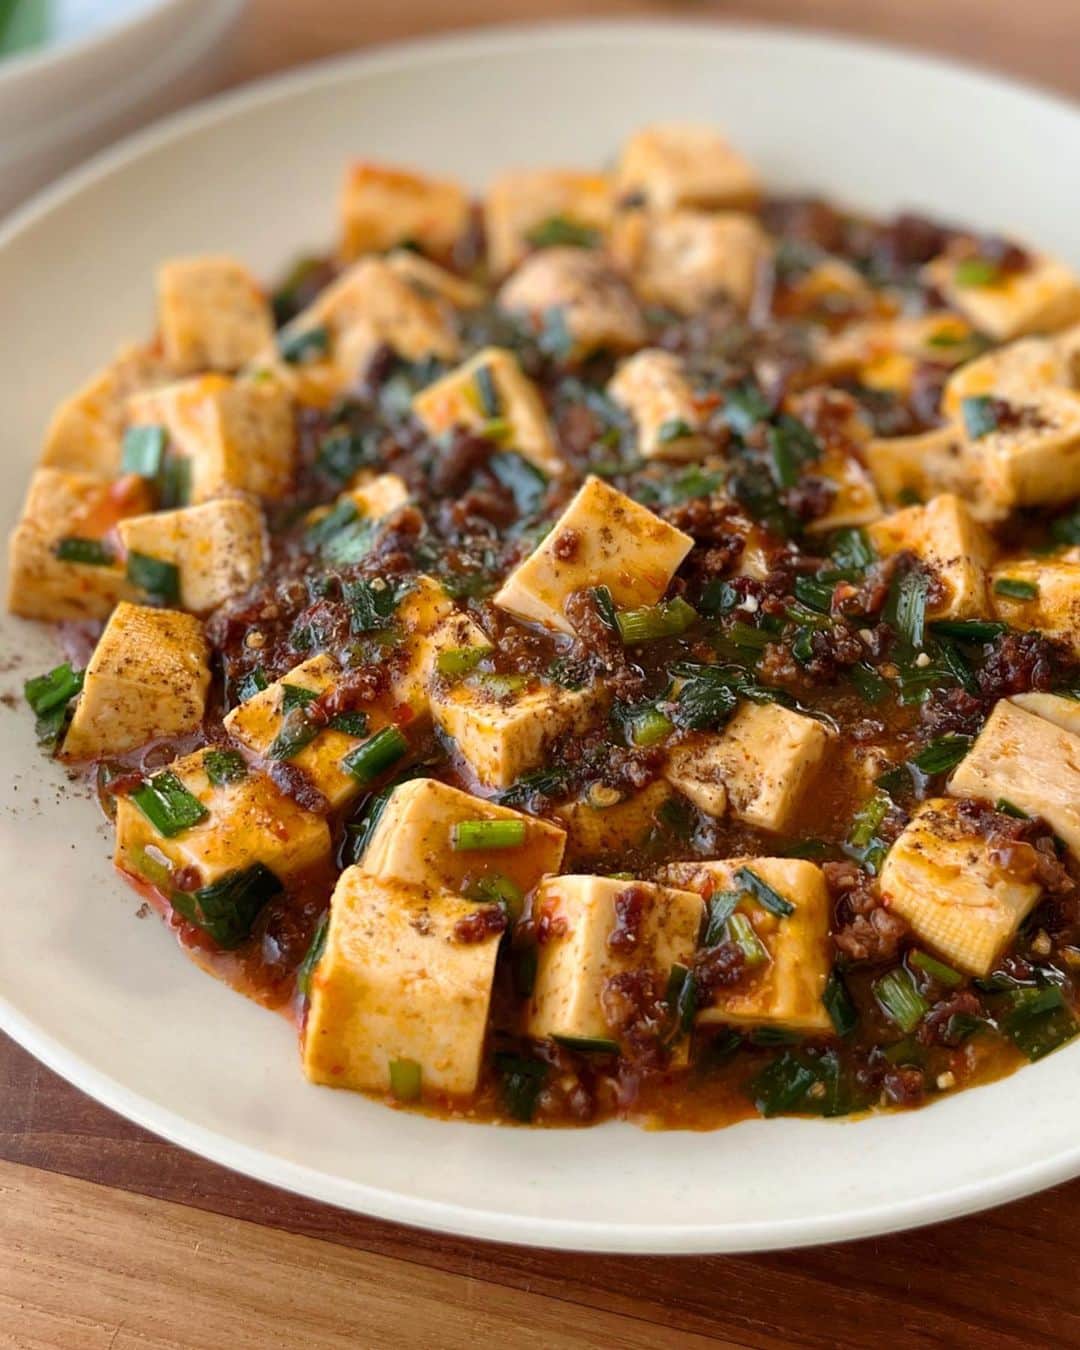 ヤミーのインスタグラム：「とにかくラクに本格味になる麻婆豆腐レシピです‼️  中華調味料は豆板醤だけでok。 にんにく、しょうが不要！ ひき肉をカリッカリに炒めると、びっくりなおいしさ！ 豆腐が崩れにくくなるコツも楽ちんで超おすすめです。  この作り方、間違いないですよ😁  *  レシピは @recipe.nadia で。  🗒ひとつのコツだけで絶品になります！「麻婆豆腐」 https://oceans-nadia.com/user/14317/recipe/458273  レシピ🆔 458273  ナディアでレシピID検索するとすぐに見つかります！  #ヤミーレシピ #麻婆豆腐 #簡単本格味レシピ #おうちで世界一周」